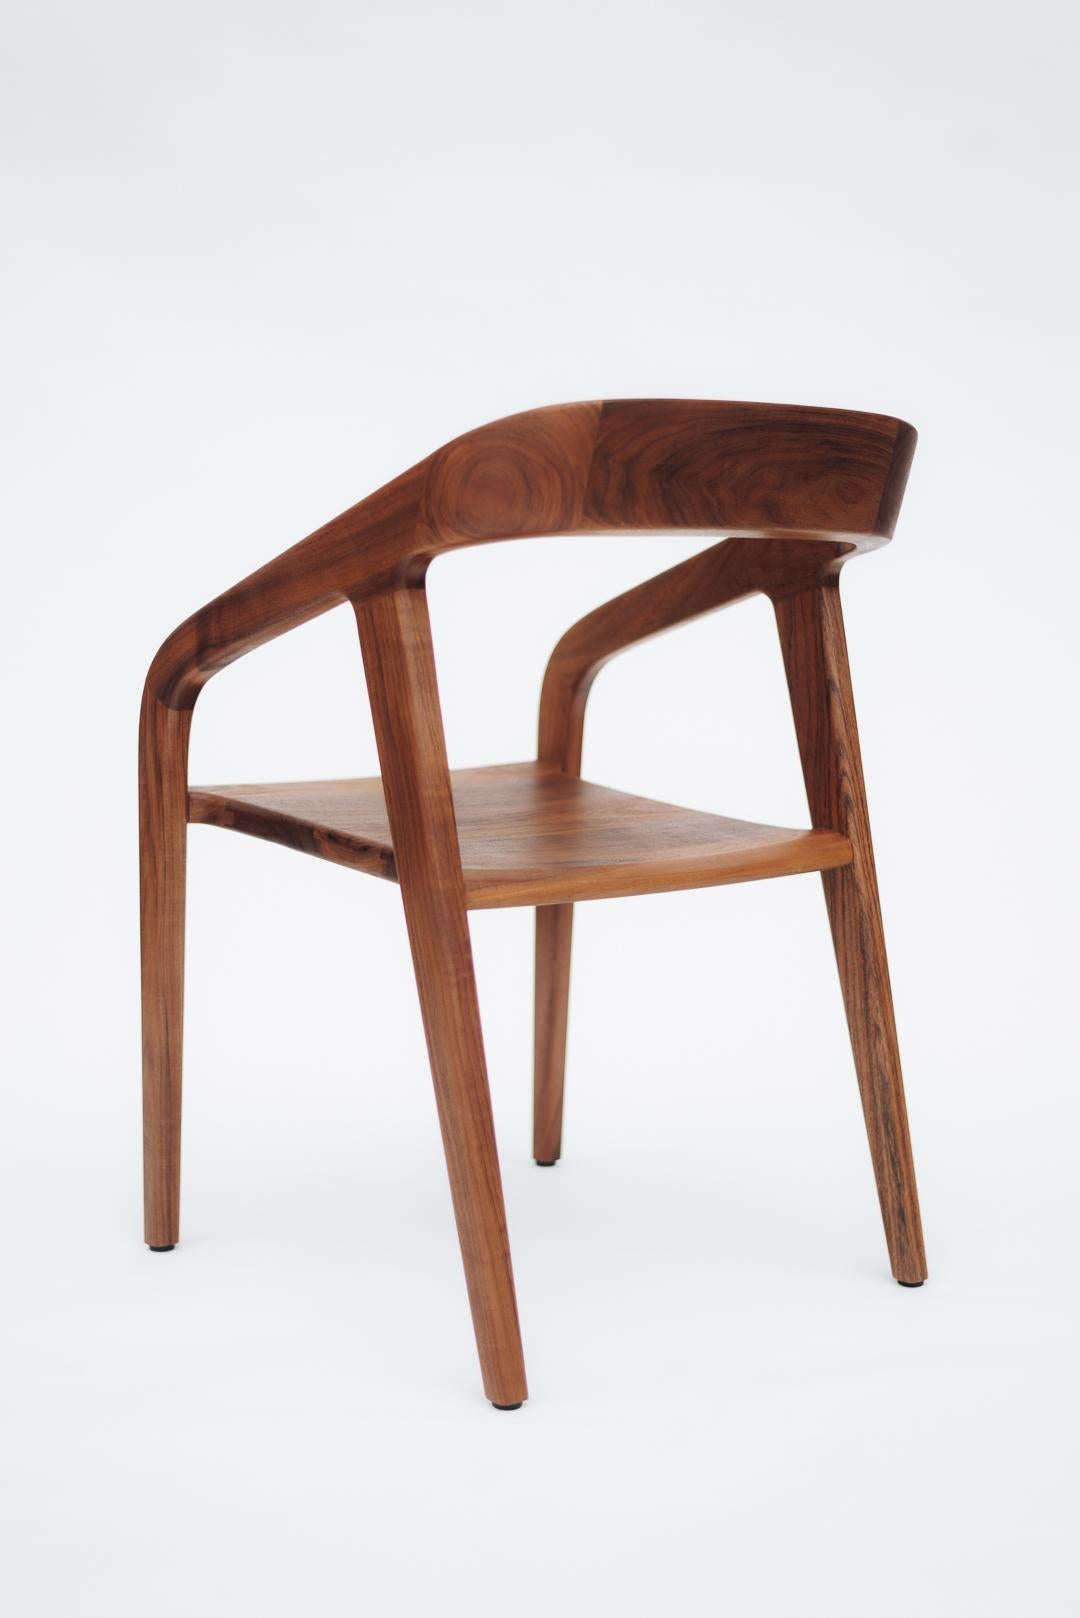 Der Tamay Chair vereint Persönlichkeit und Subtilität, basierend auf einfachen Linien und harmonischen Proportionen, die die natürliche Schönheit des massiven Tropenholzes aus dem Südosten Mexikos unterstreichen. Bei der Herstellung wurde besonderer